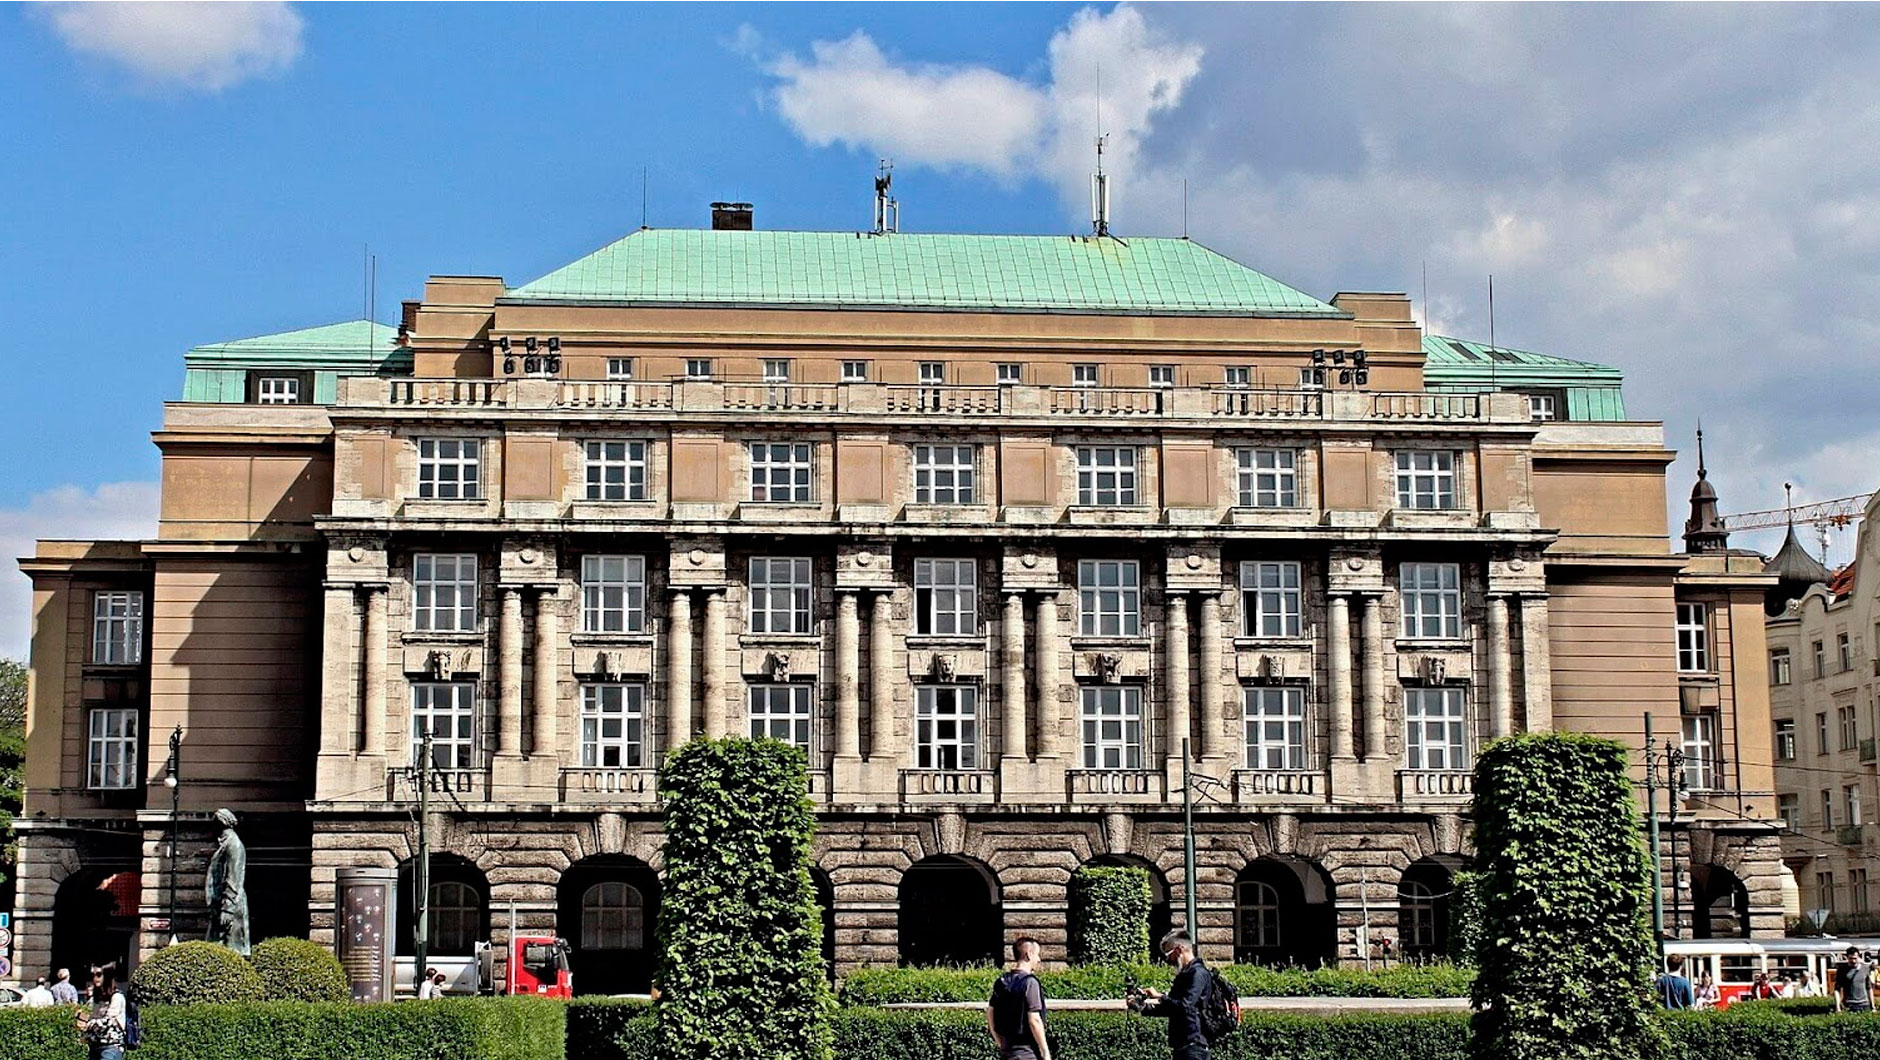 Карлов университет в Праге - один из первых крупных мировых университетов. Поэтому совсем не удивительно, что когда-то в нём преподавали Никола Тесла и Альберт Эйнштейн